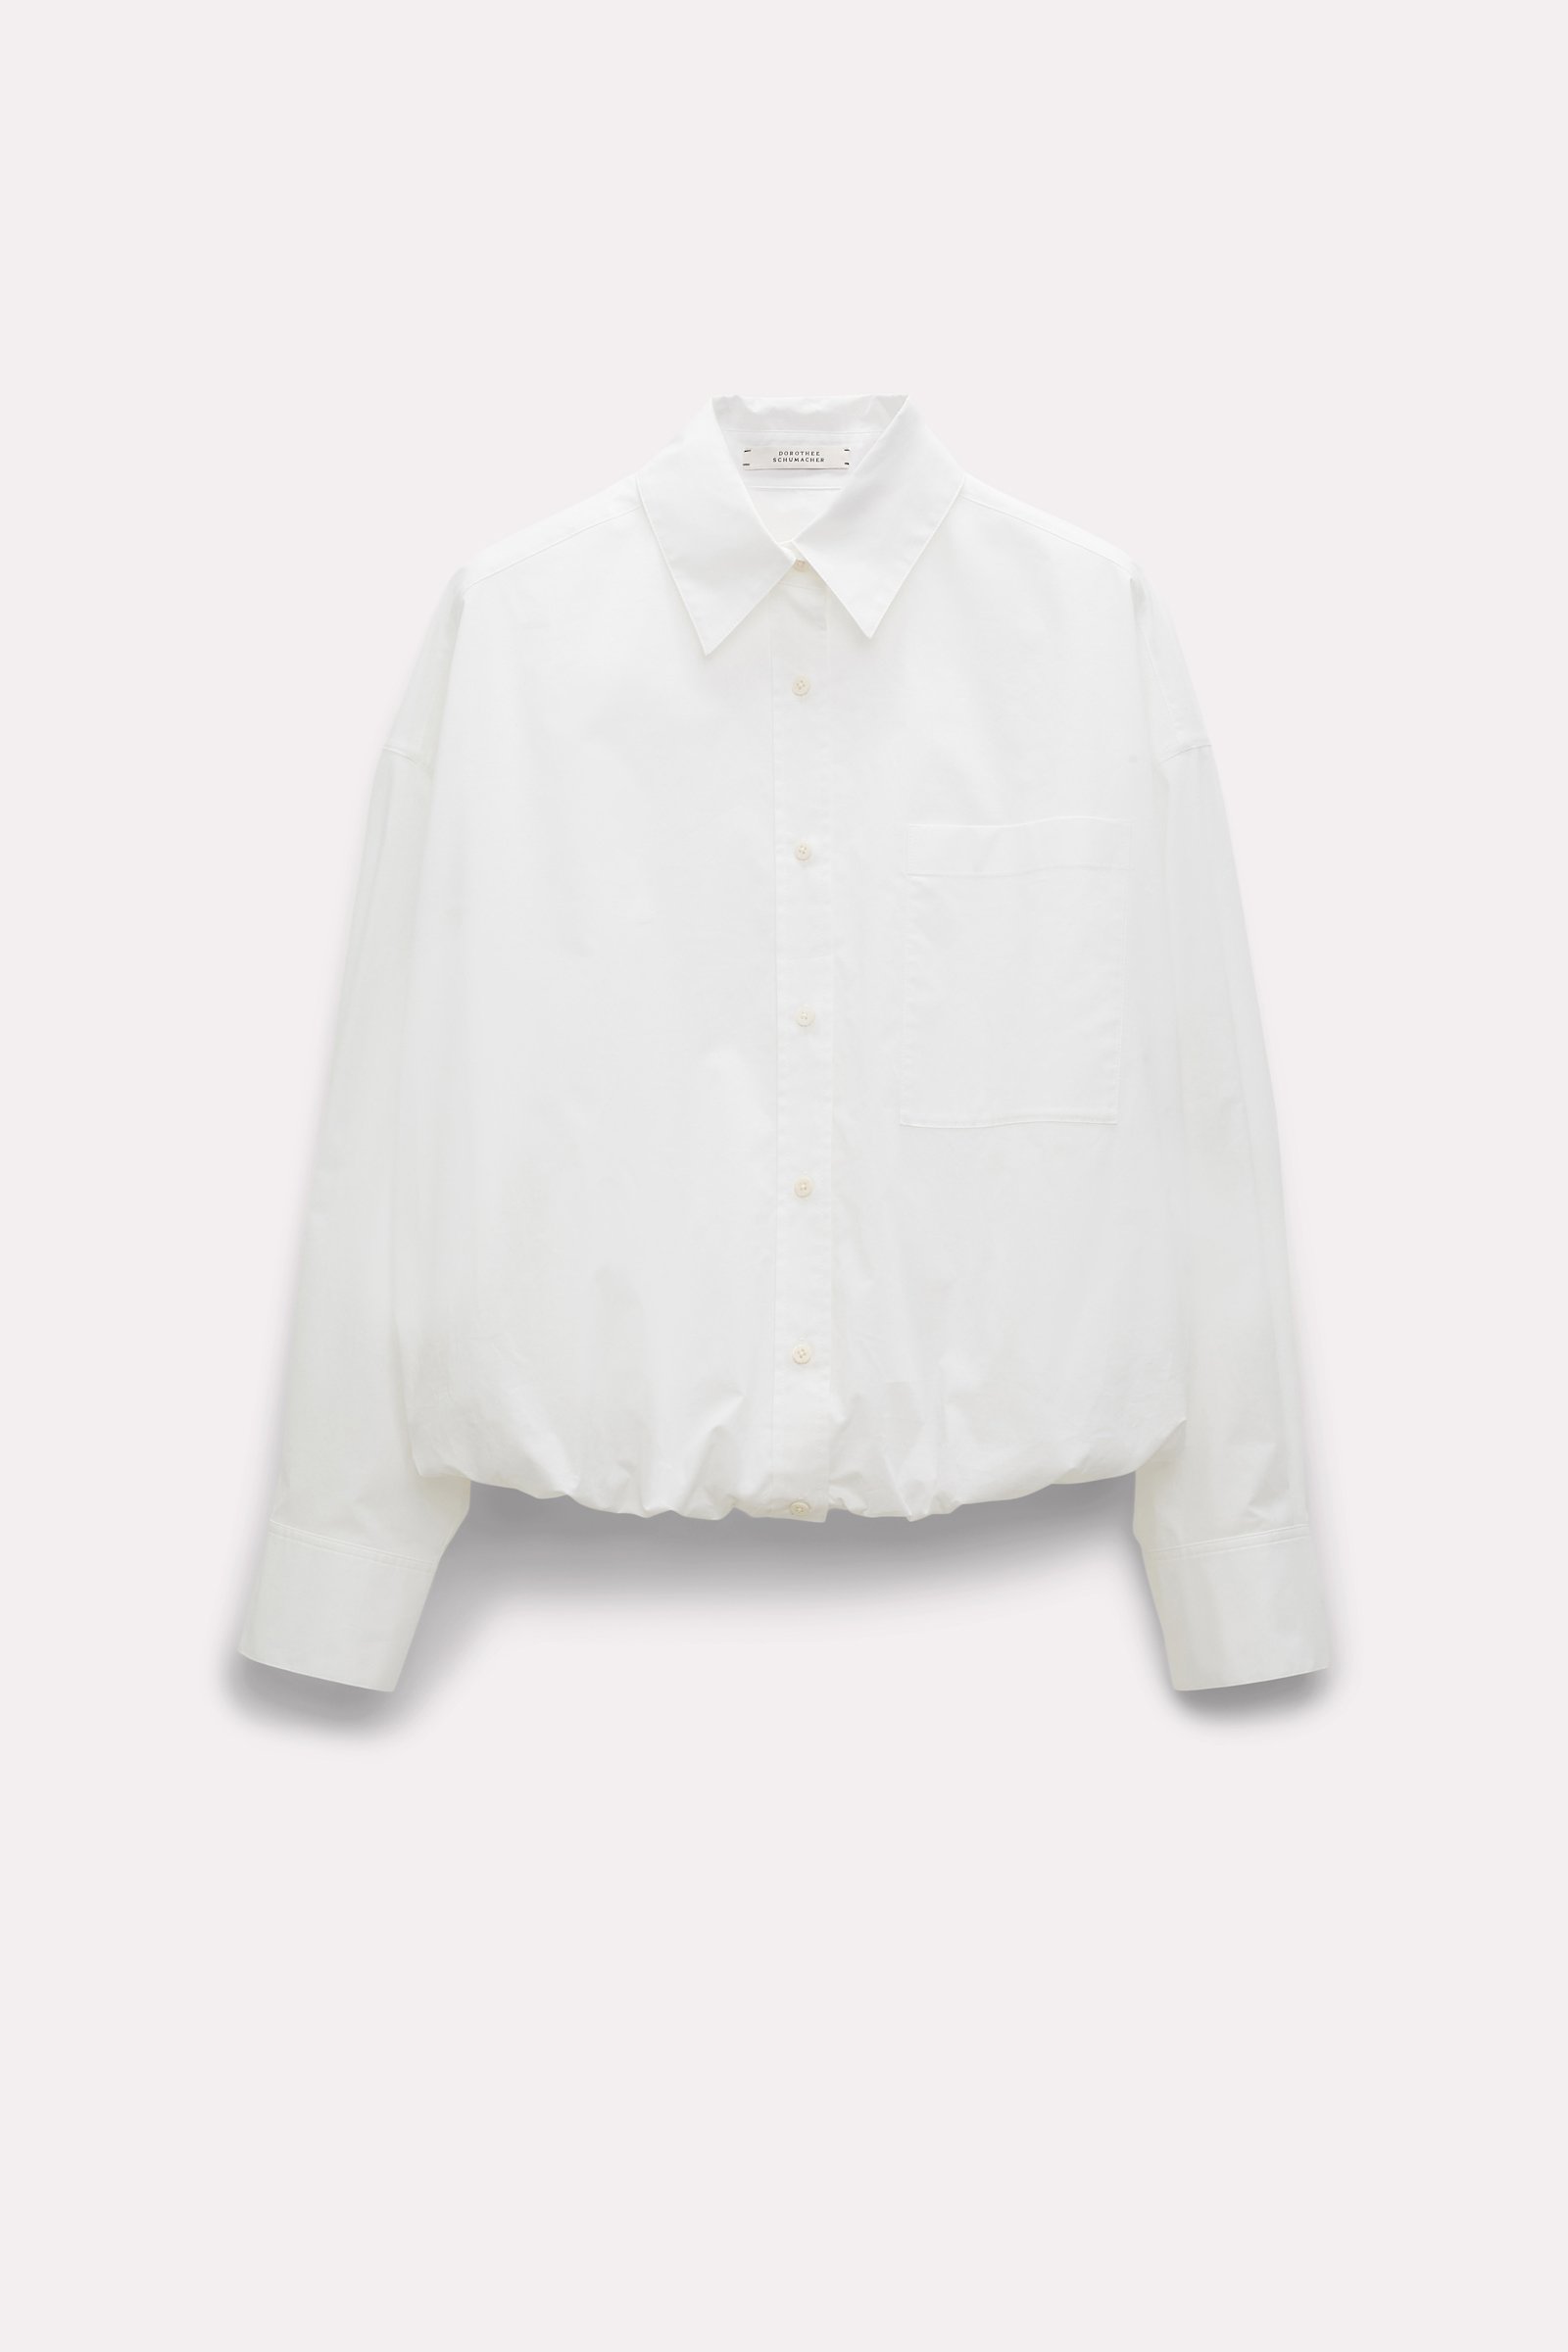 Dorothee Schumacher Cotton shirt with balloon hem pure white